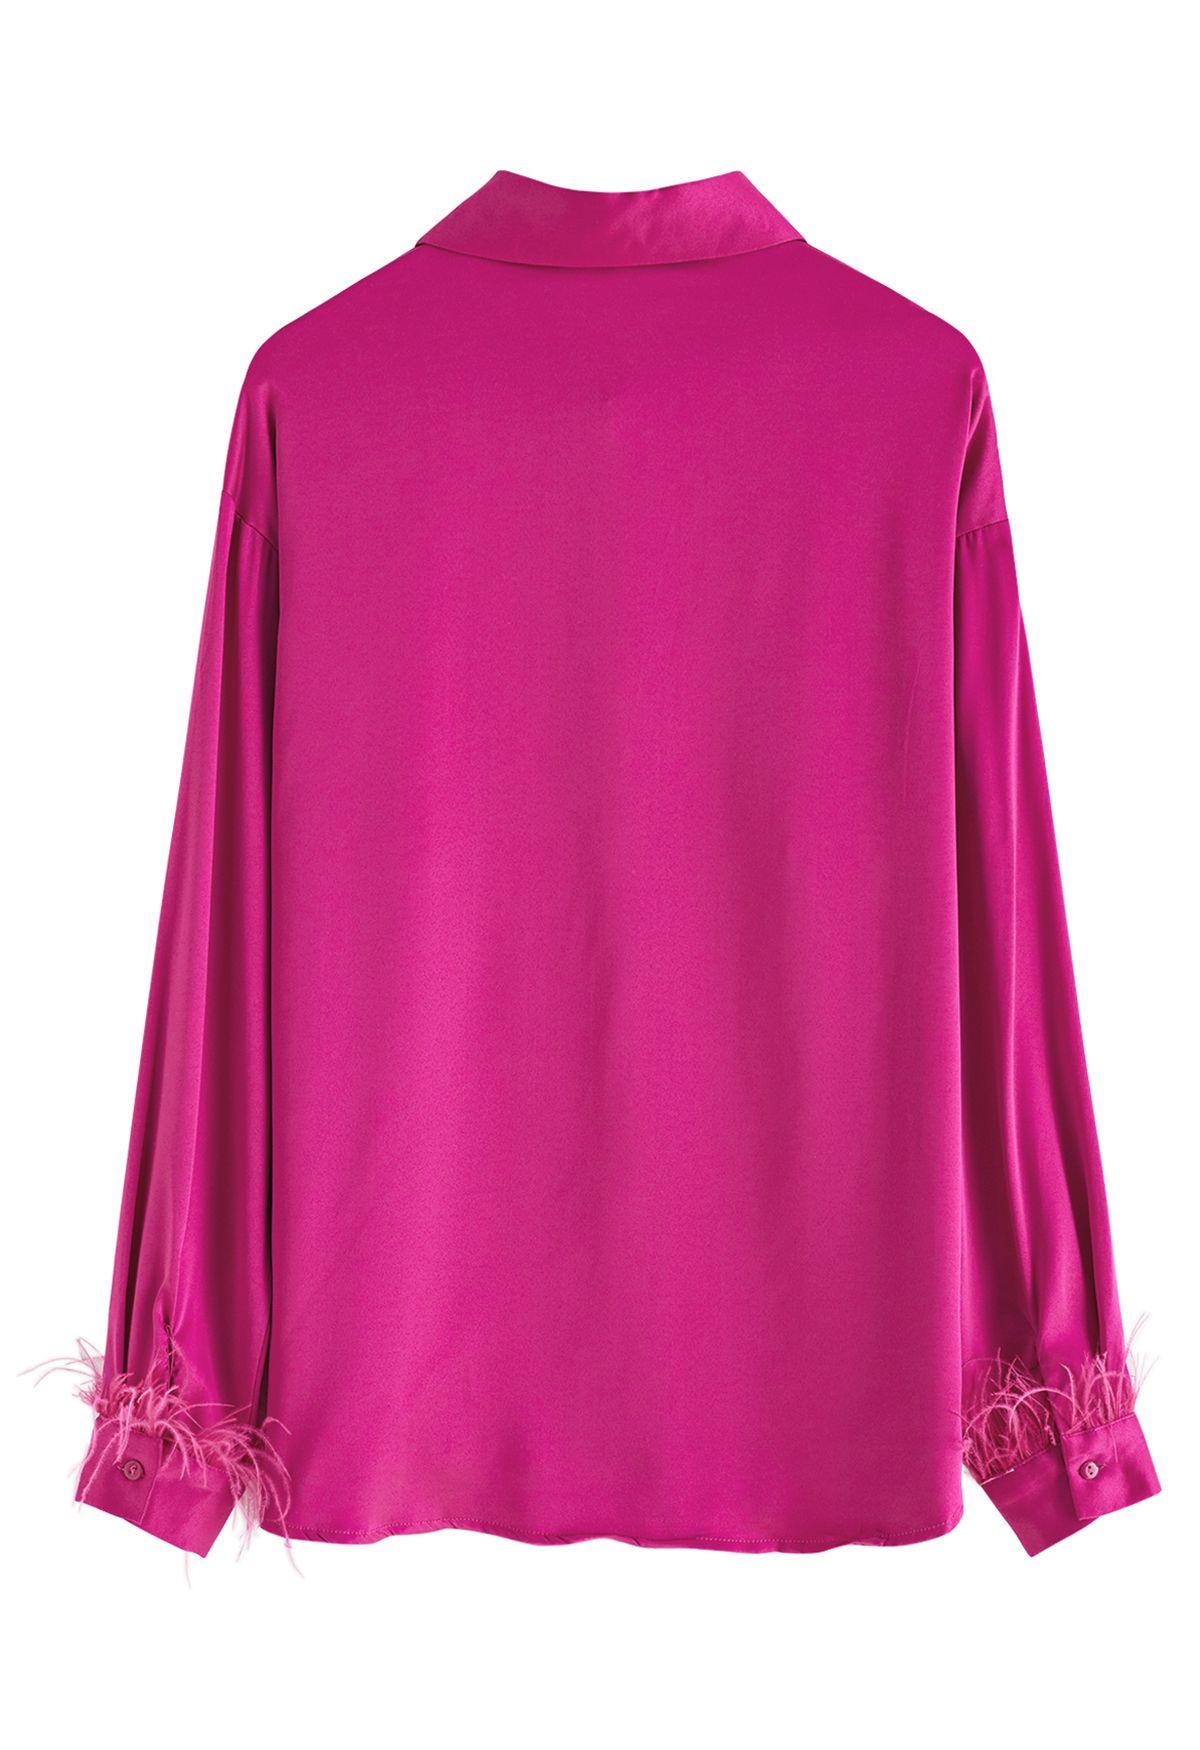 Camisa de cetim com acabamento de penas em rosa choque